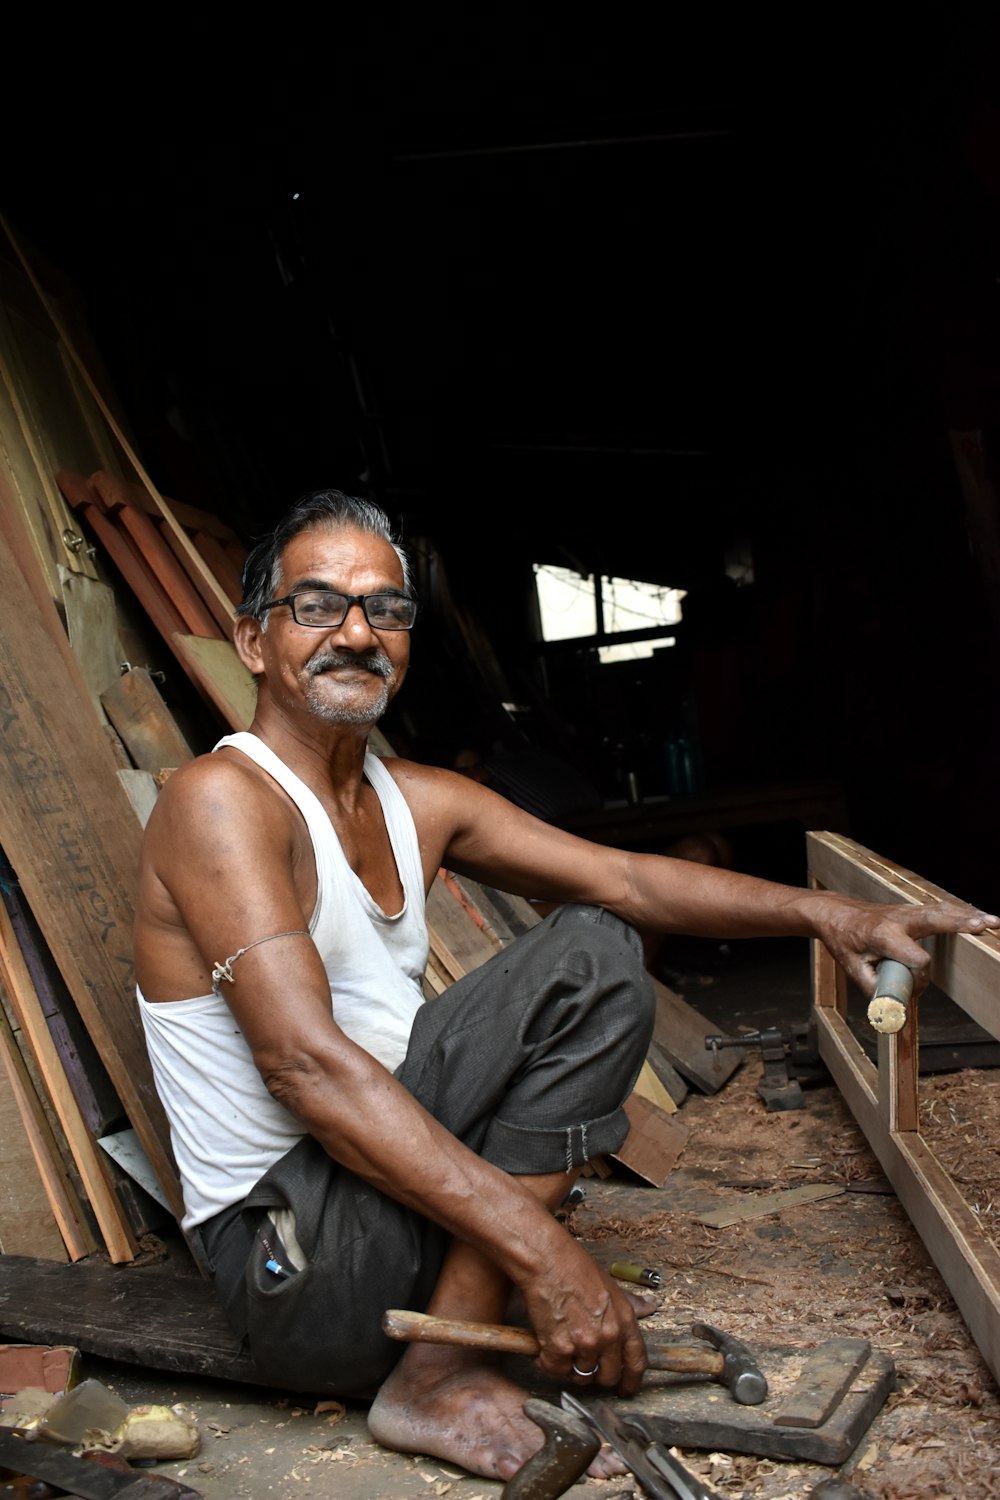 un uomo seduto a terra che lavora su un pezzo di legno